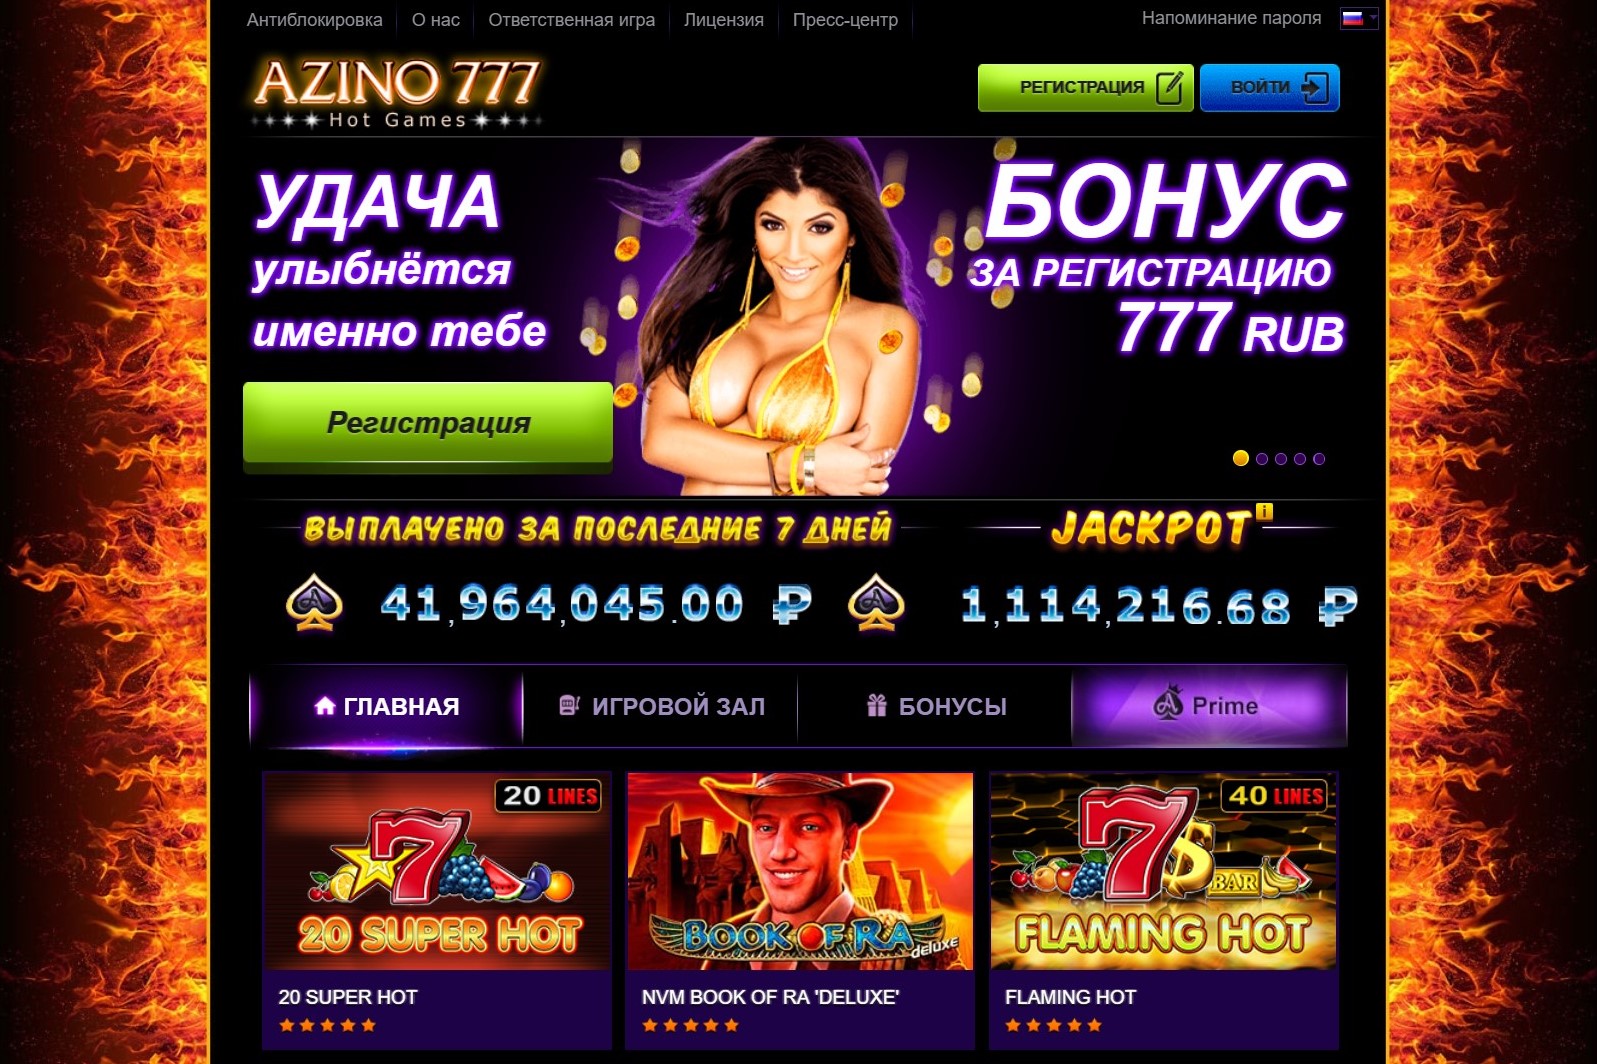 Казино 777 игровые автоматы официальный сайт проверенные казино с быстрым выводом денег